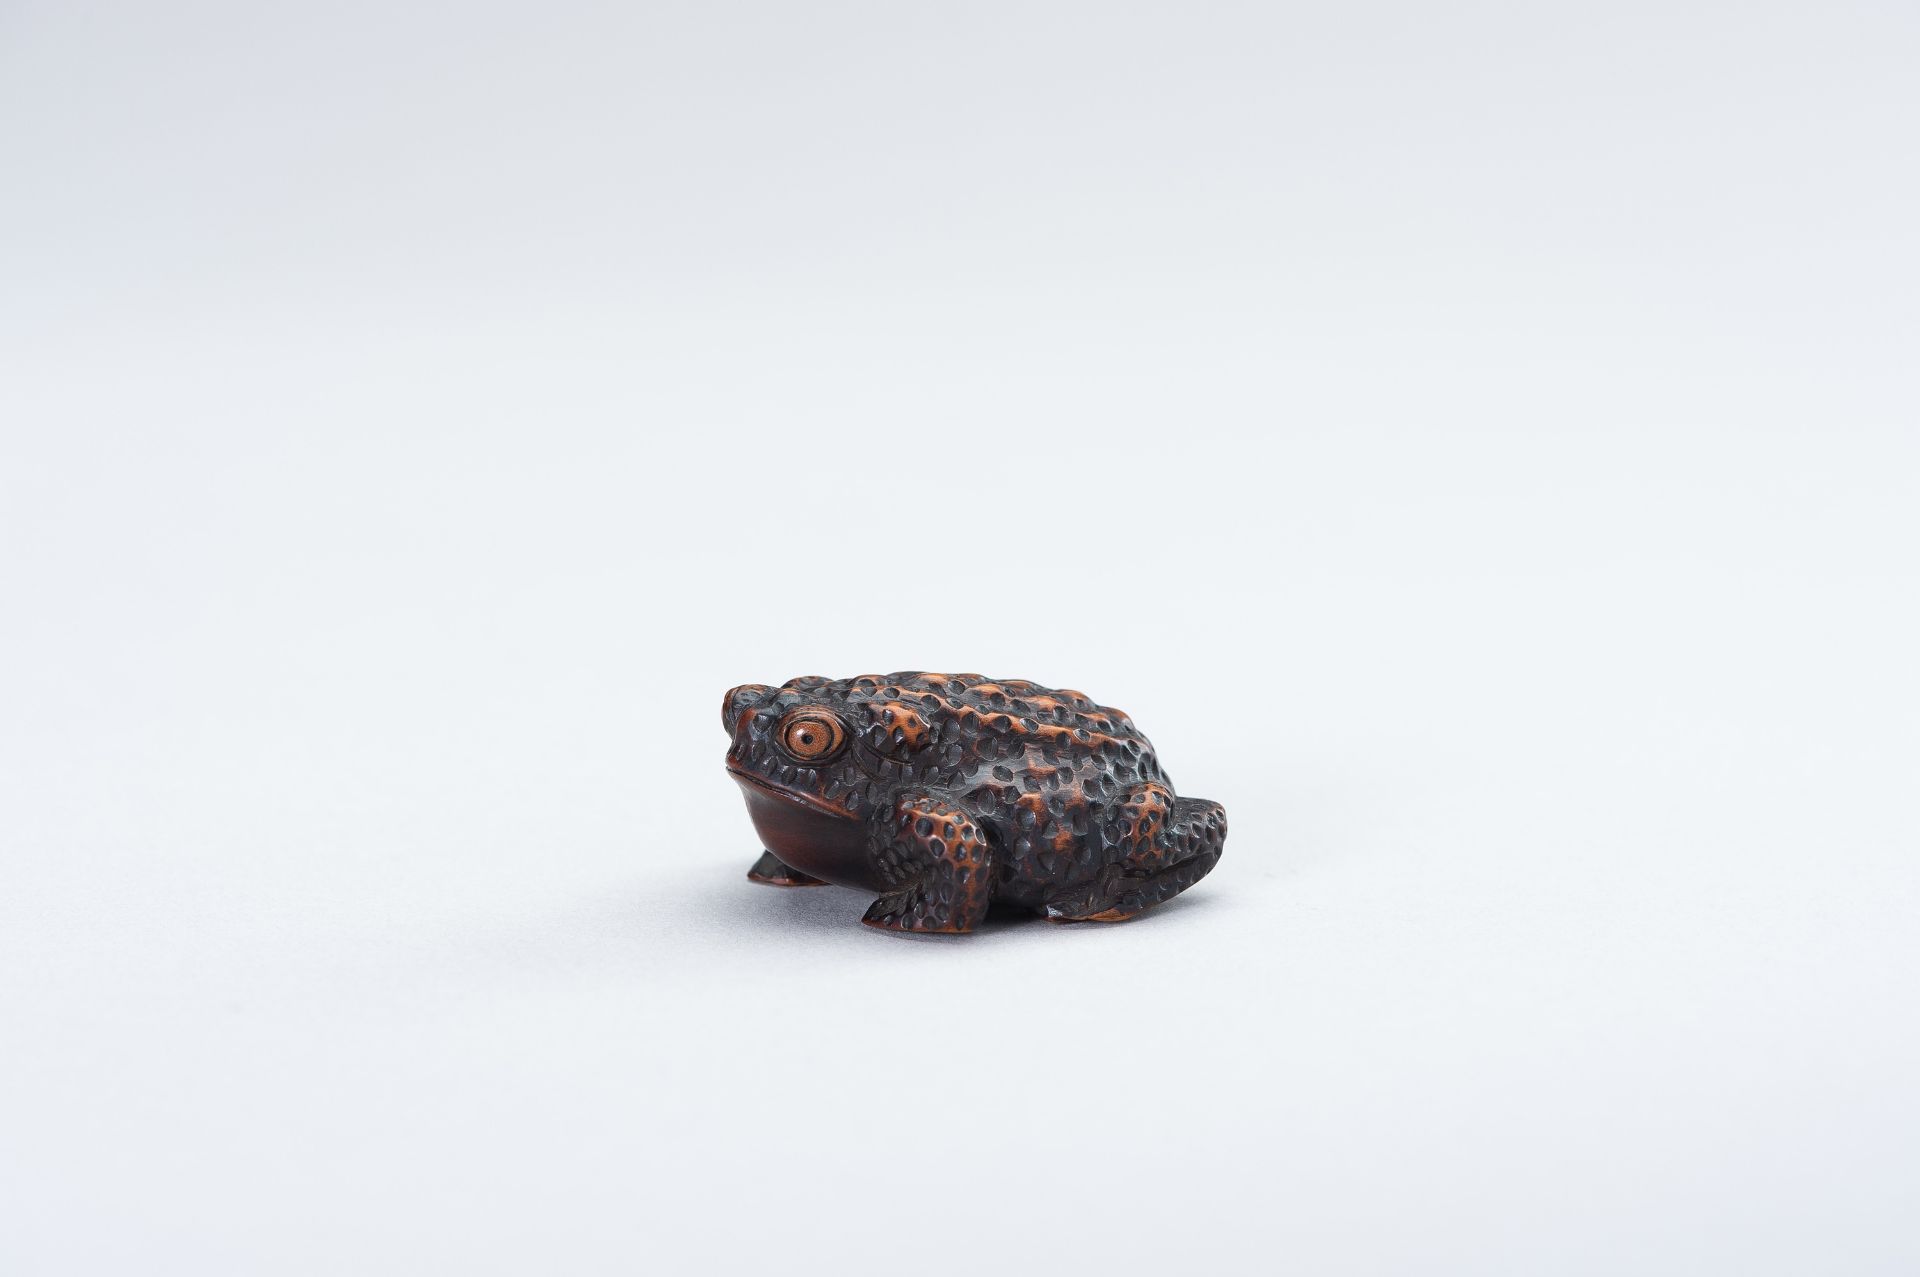 SHIGETADA: A WOOD NETSUKE OF A TOAD - Image 2 of 14